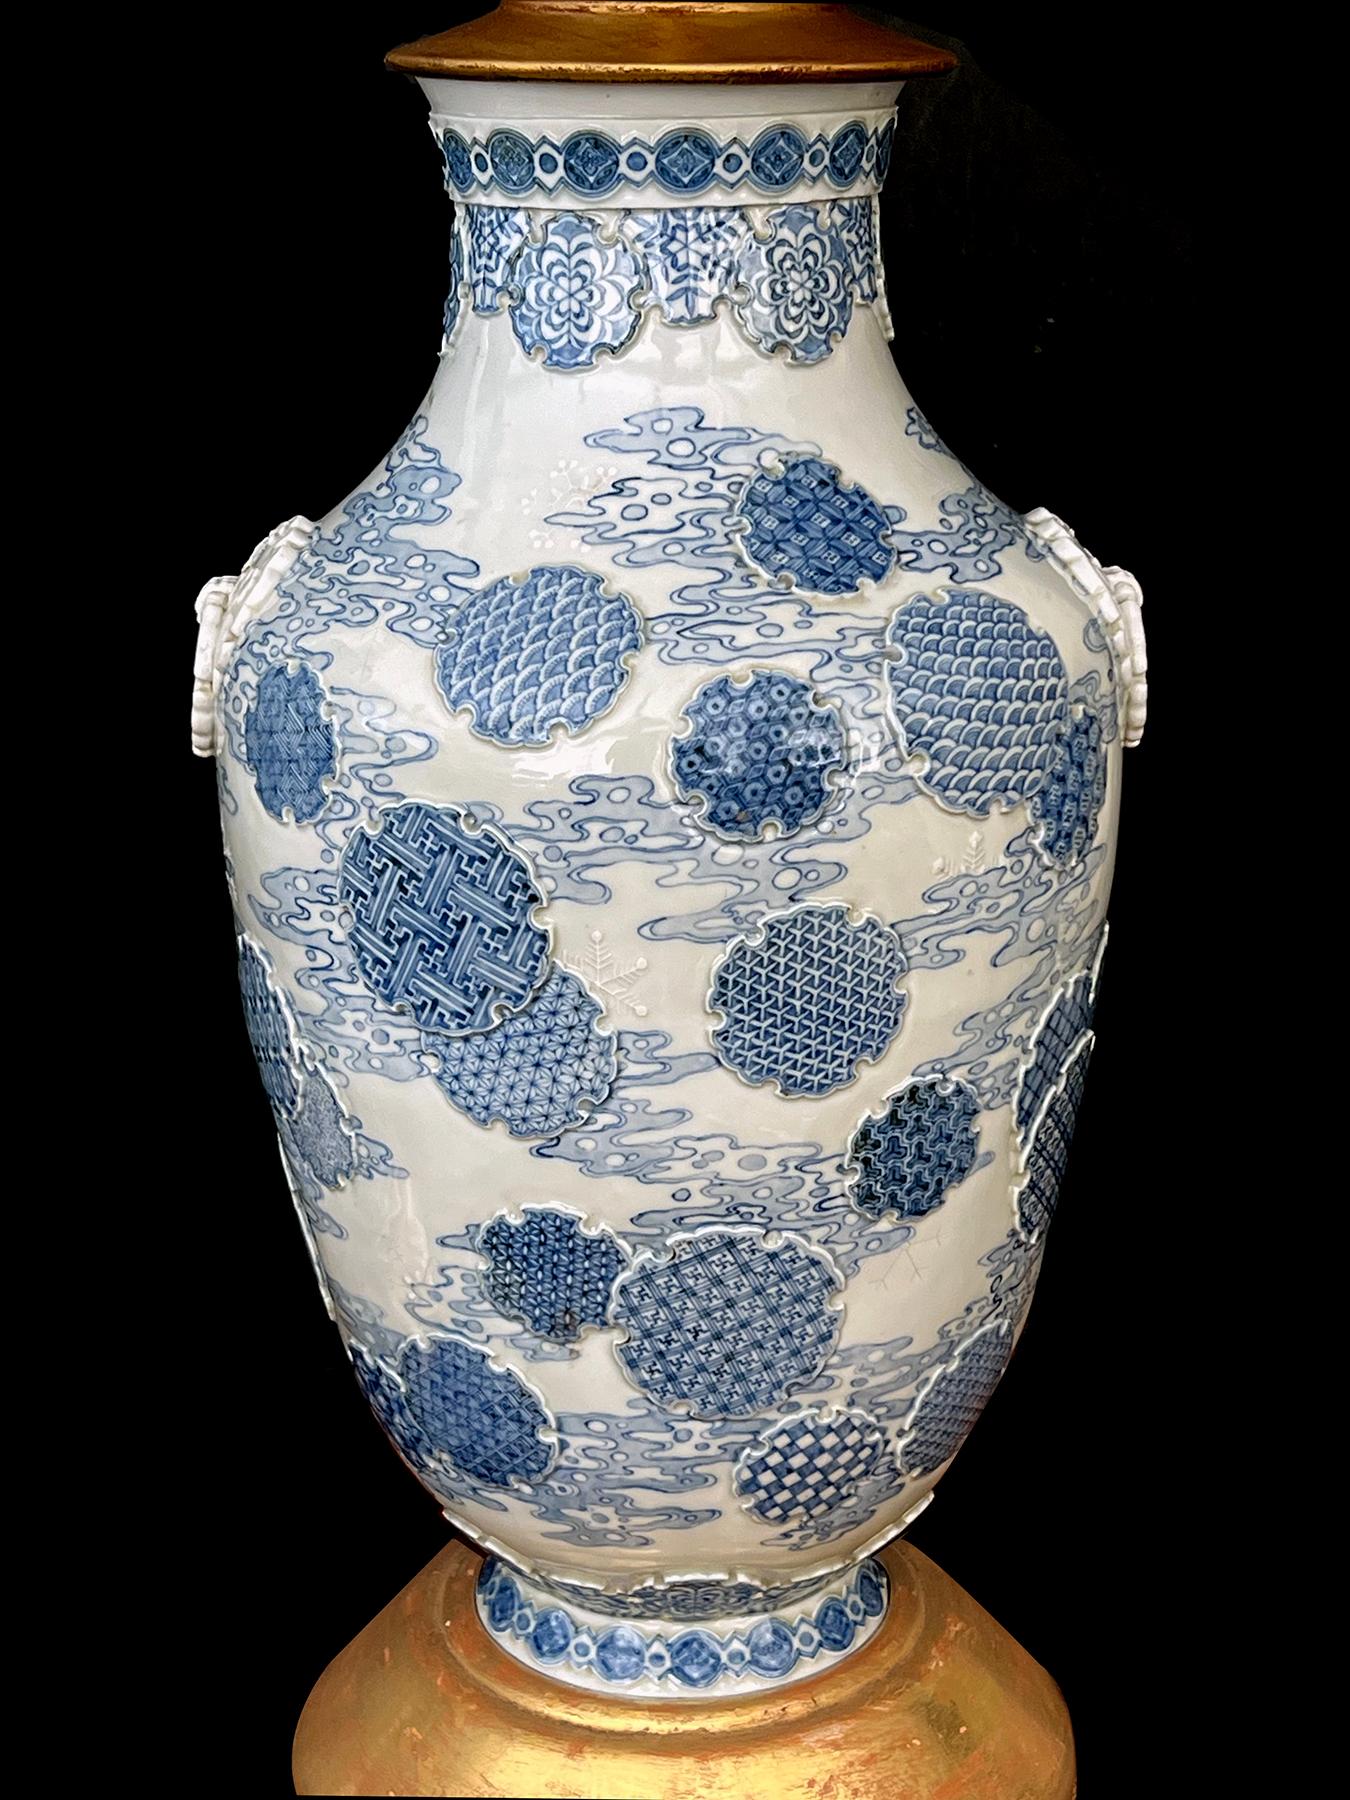 chaque vase ovoïde avec un décor en relief au niveau du col et orné de médaillons en relief, le tout sur un fond bleu pâle avec des rinceaux de nuages peints ; le vase est flanqué de poignées en anneau appliquées ; chaque vase est marqué sur le